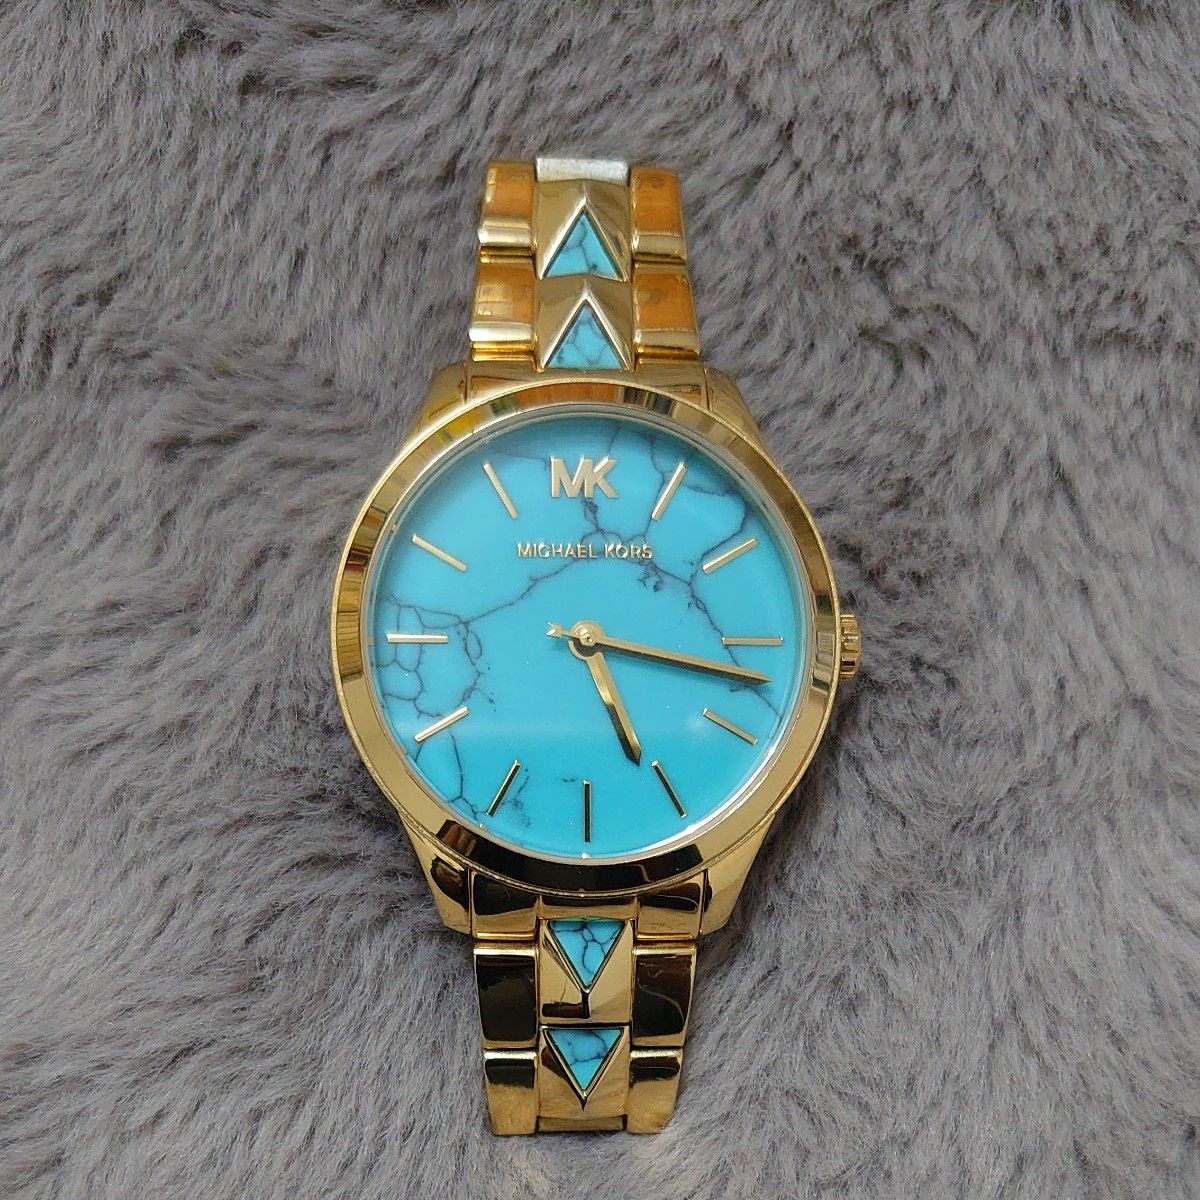 【美品】MICHAEL KORS マイケルコース MK6670 ゴールド ターコイズブルー レディース腕時計 正常作動